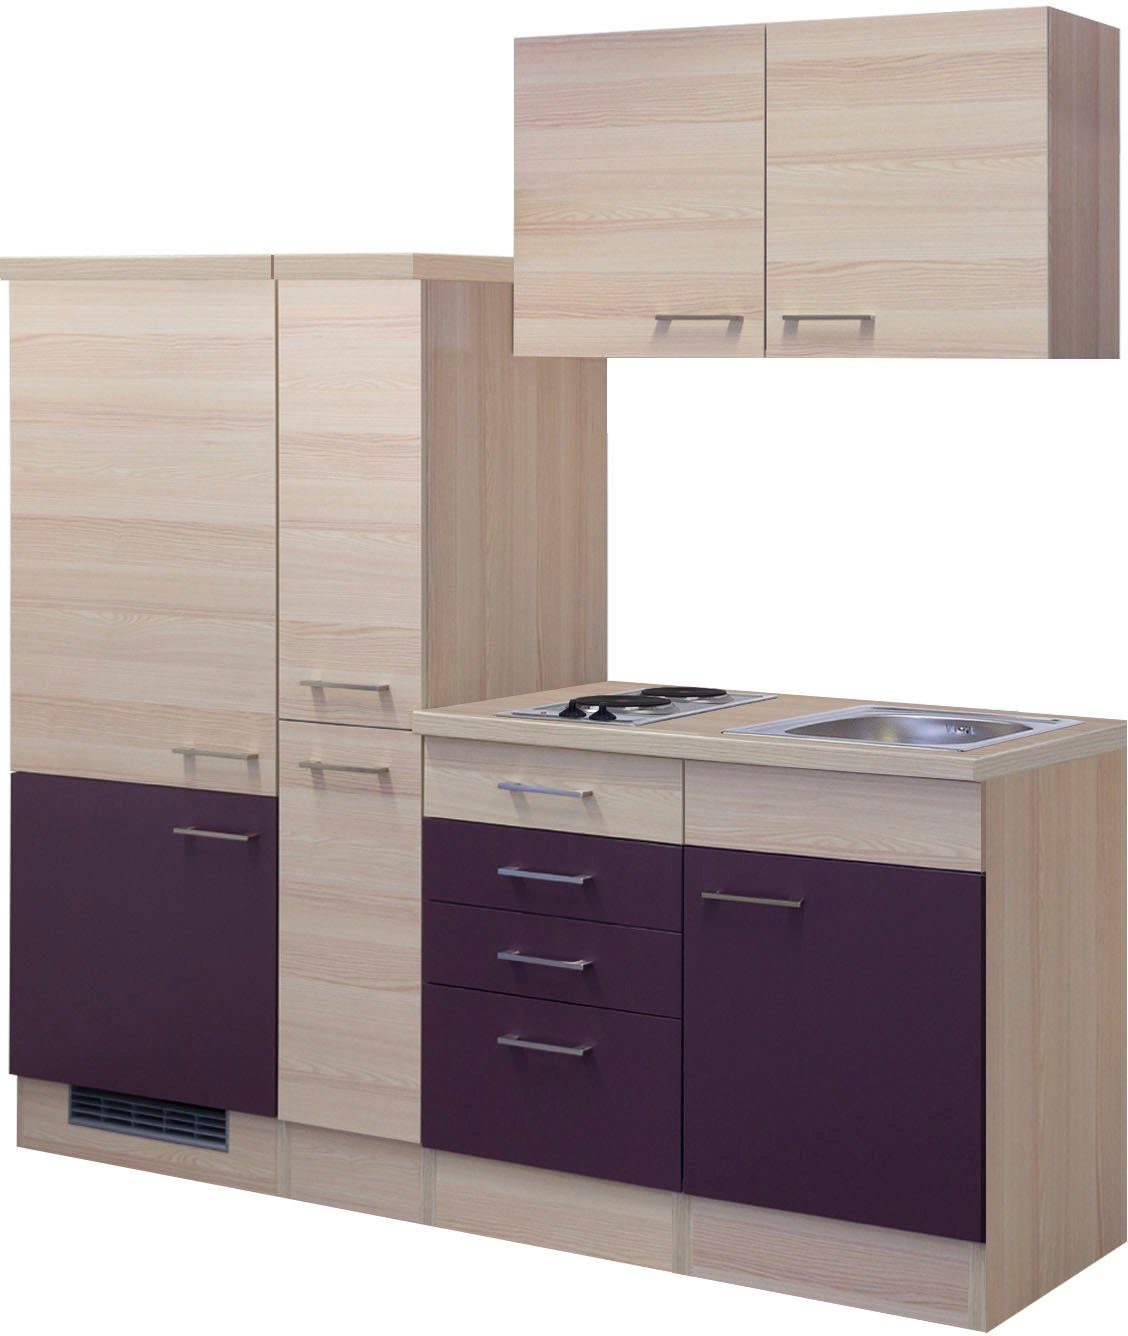 Flex-Well Küche Portland, Gesamtbreite 190 cm, mit Apothekerschrank, mit Einbau-Kühlschrank etc.